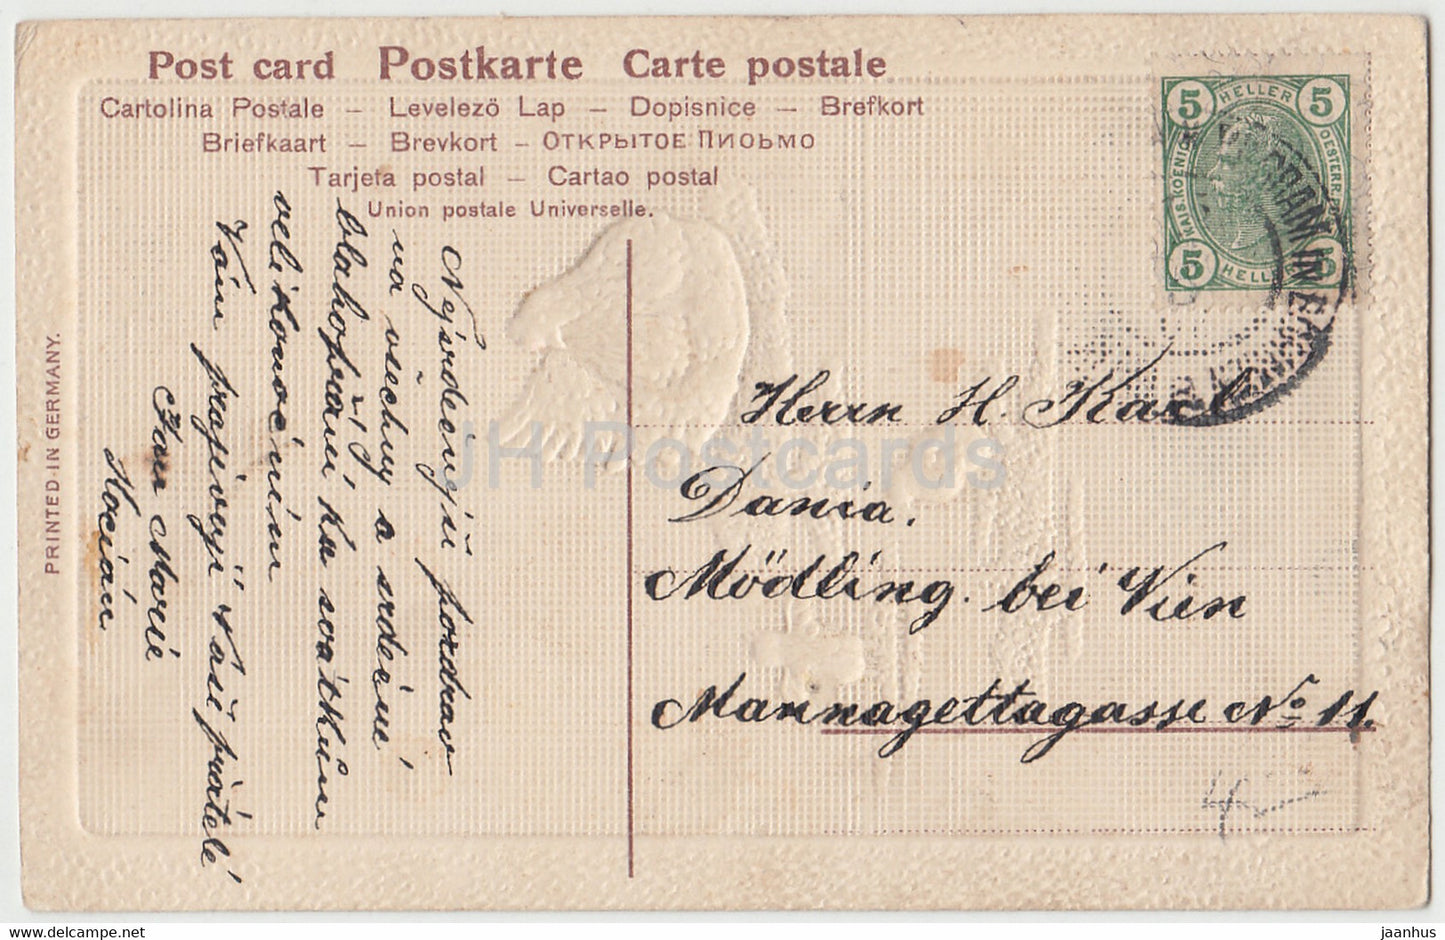 Carte de vœux de Pâques - Vesele Velikonoce - poulet - Ser 350 - carte postale ancienne - Allemagne - utilisée